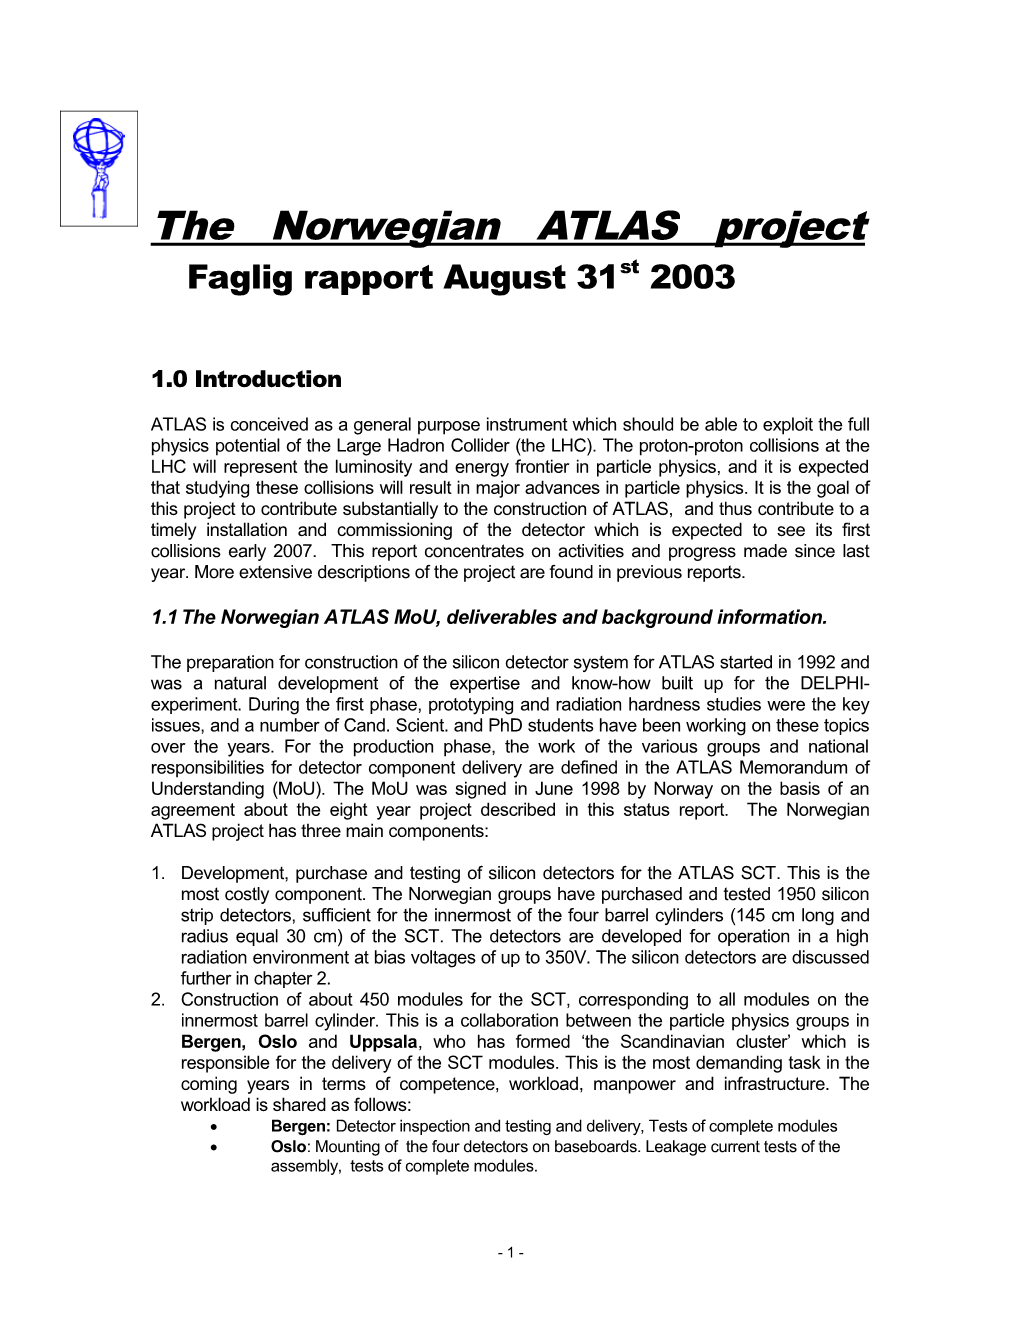 ATLAS Presentations in September